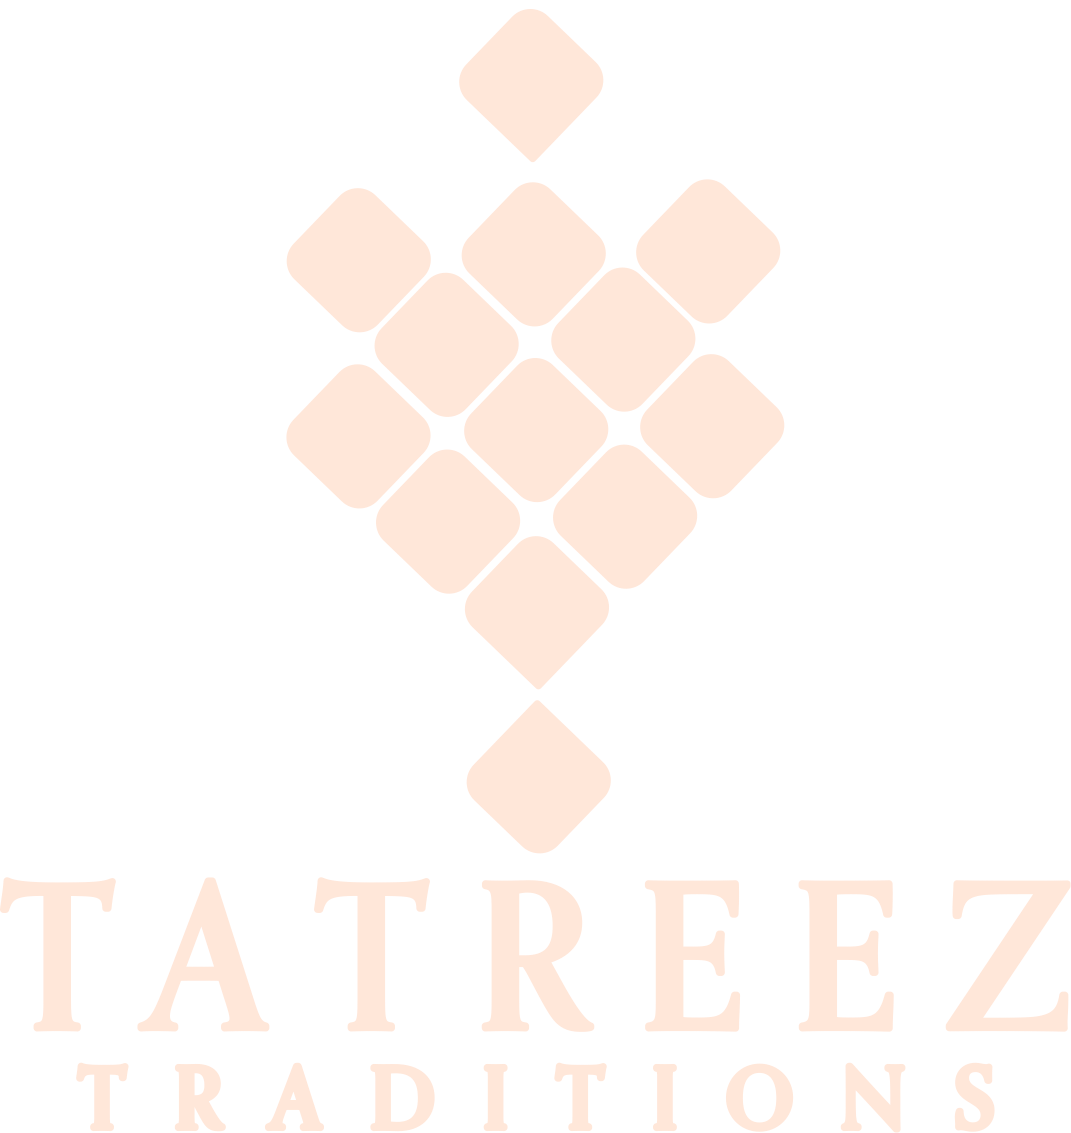 Tatreez Traditions